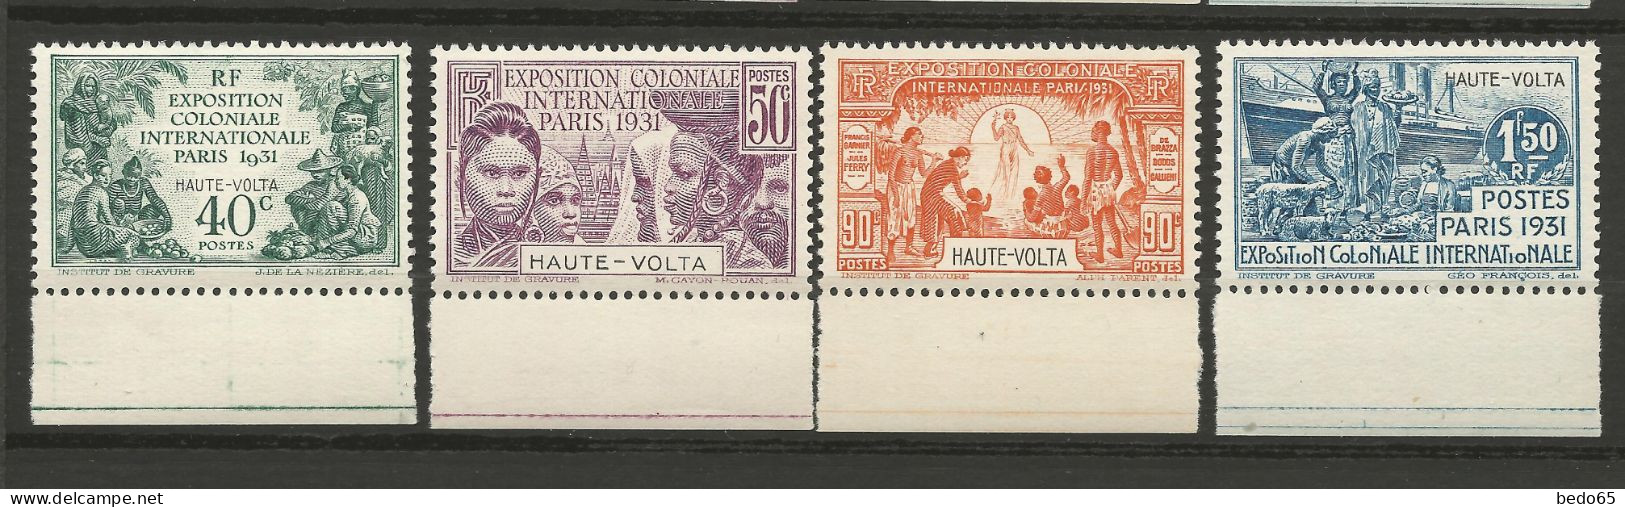 HAUTE-VOLTA EXPO COLONIALE 1931 Série Complète N° 66 à 69 BDF NEUF** LUXE SANS CHARNIERE / Hingeless  / MNH - Nuovi